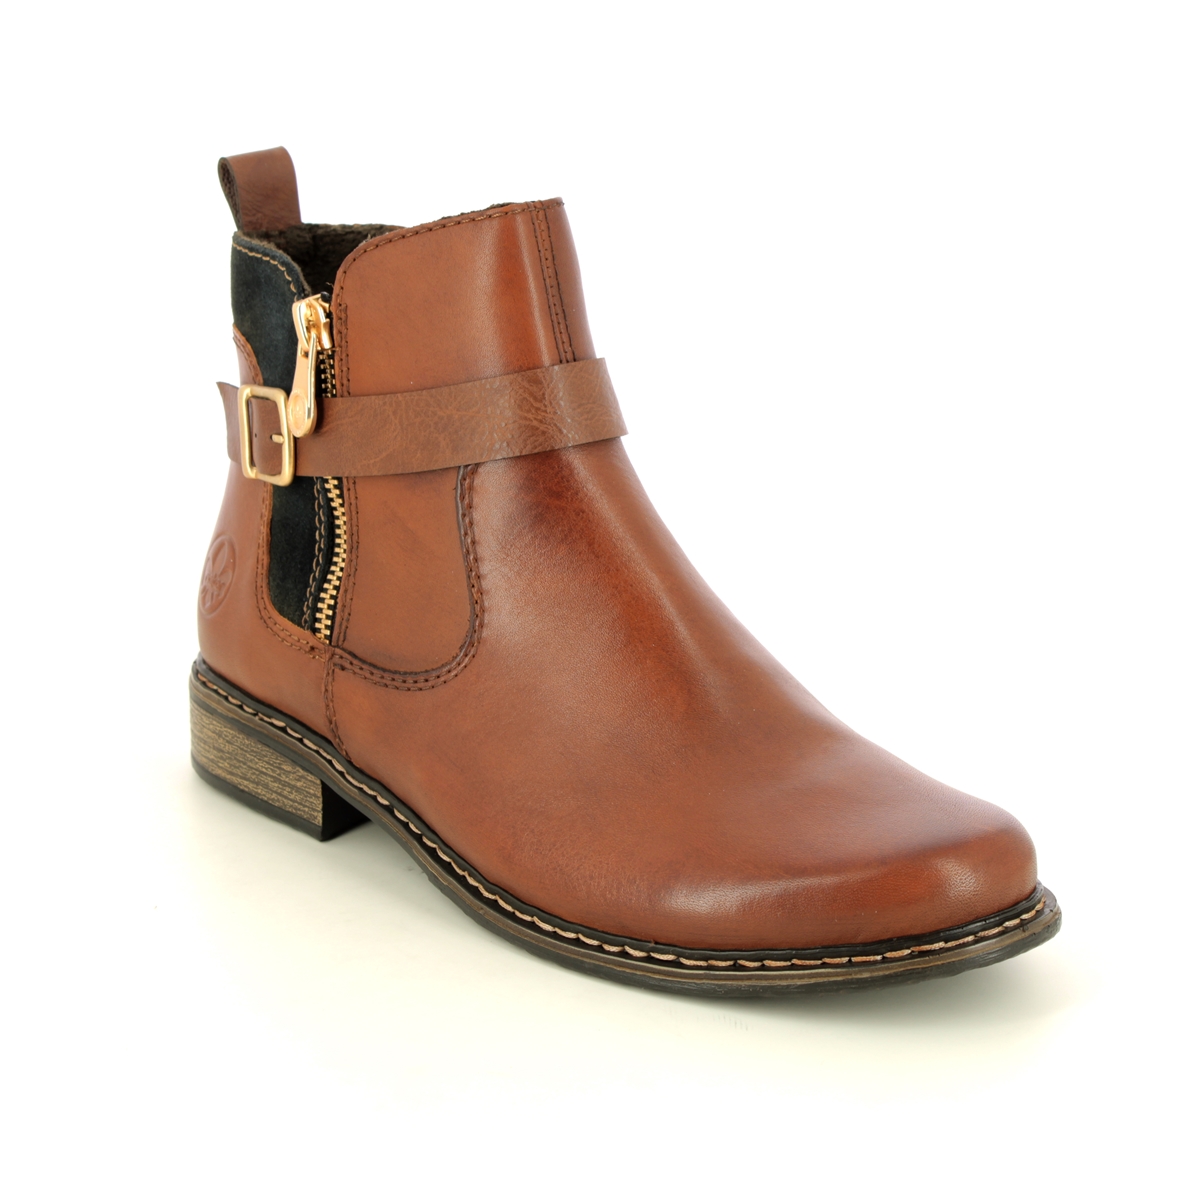 Rieker Peechez Tan Leather Womens Chelsea Boots Z4959-22 In Size 42 In Plain Tan Leather